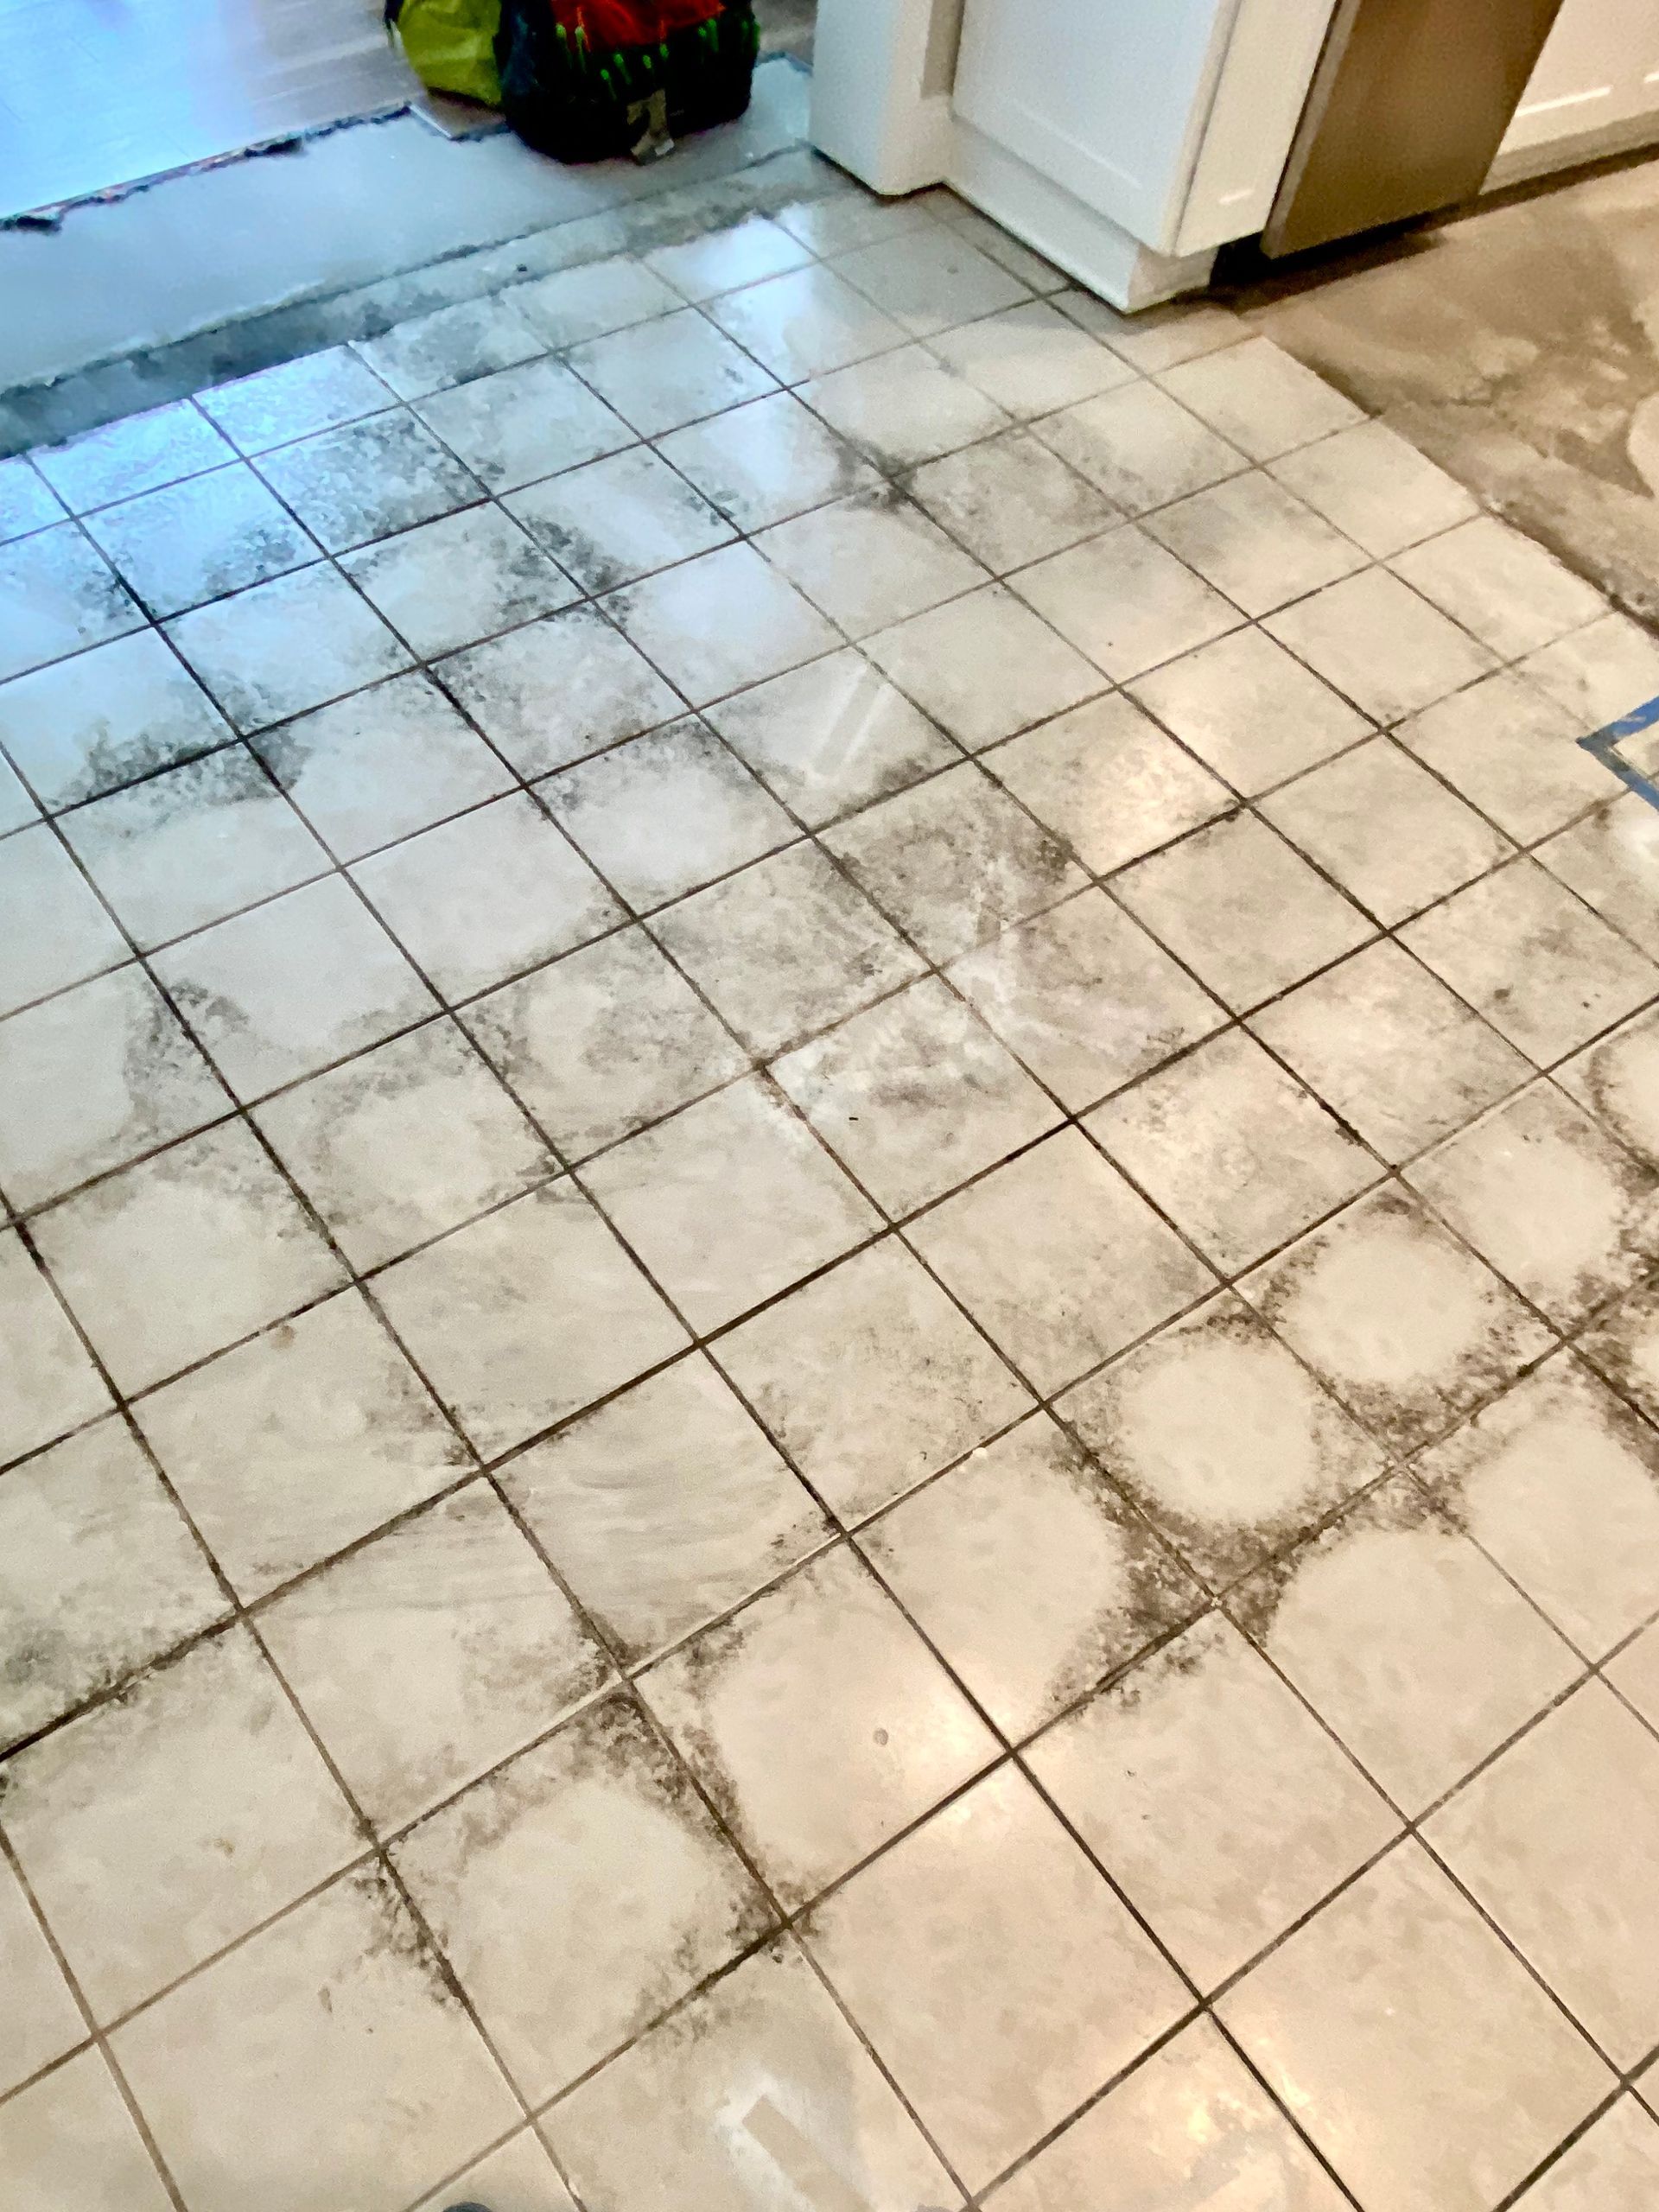 Mold on floor tiles